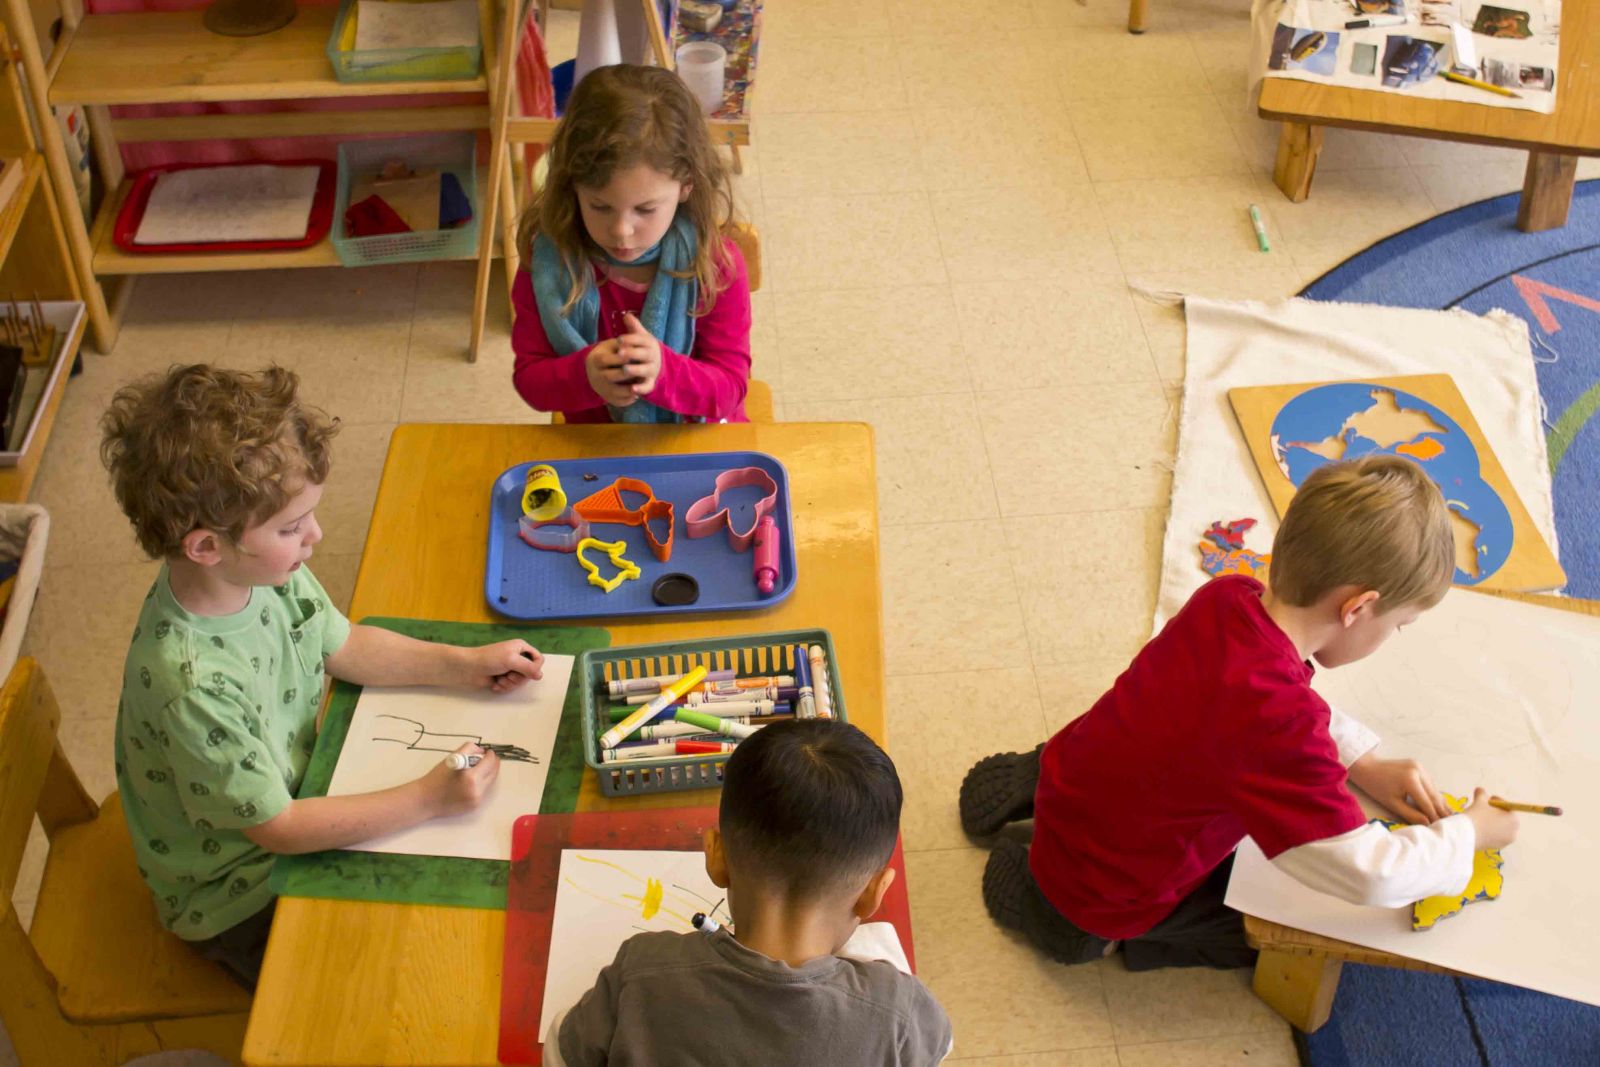 Phân biệt phương pháp Montessori với phương pháp học truyền thống